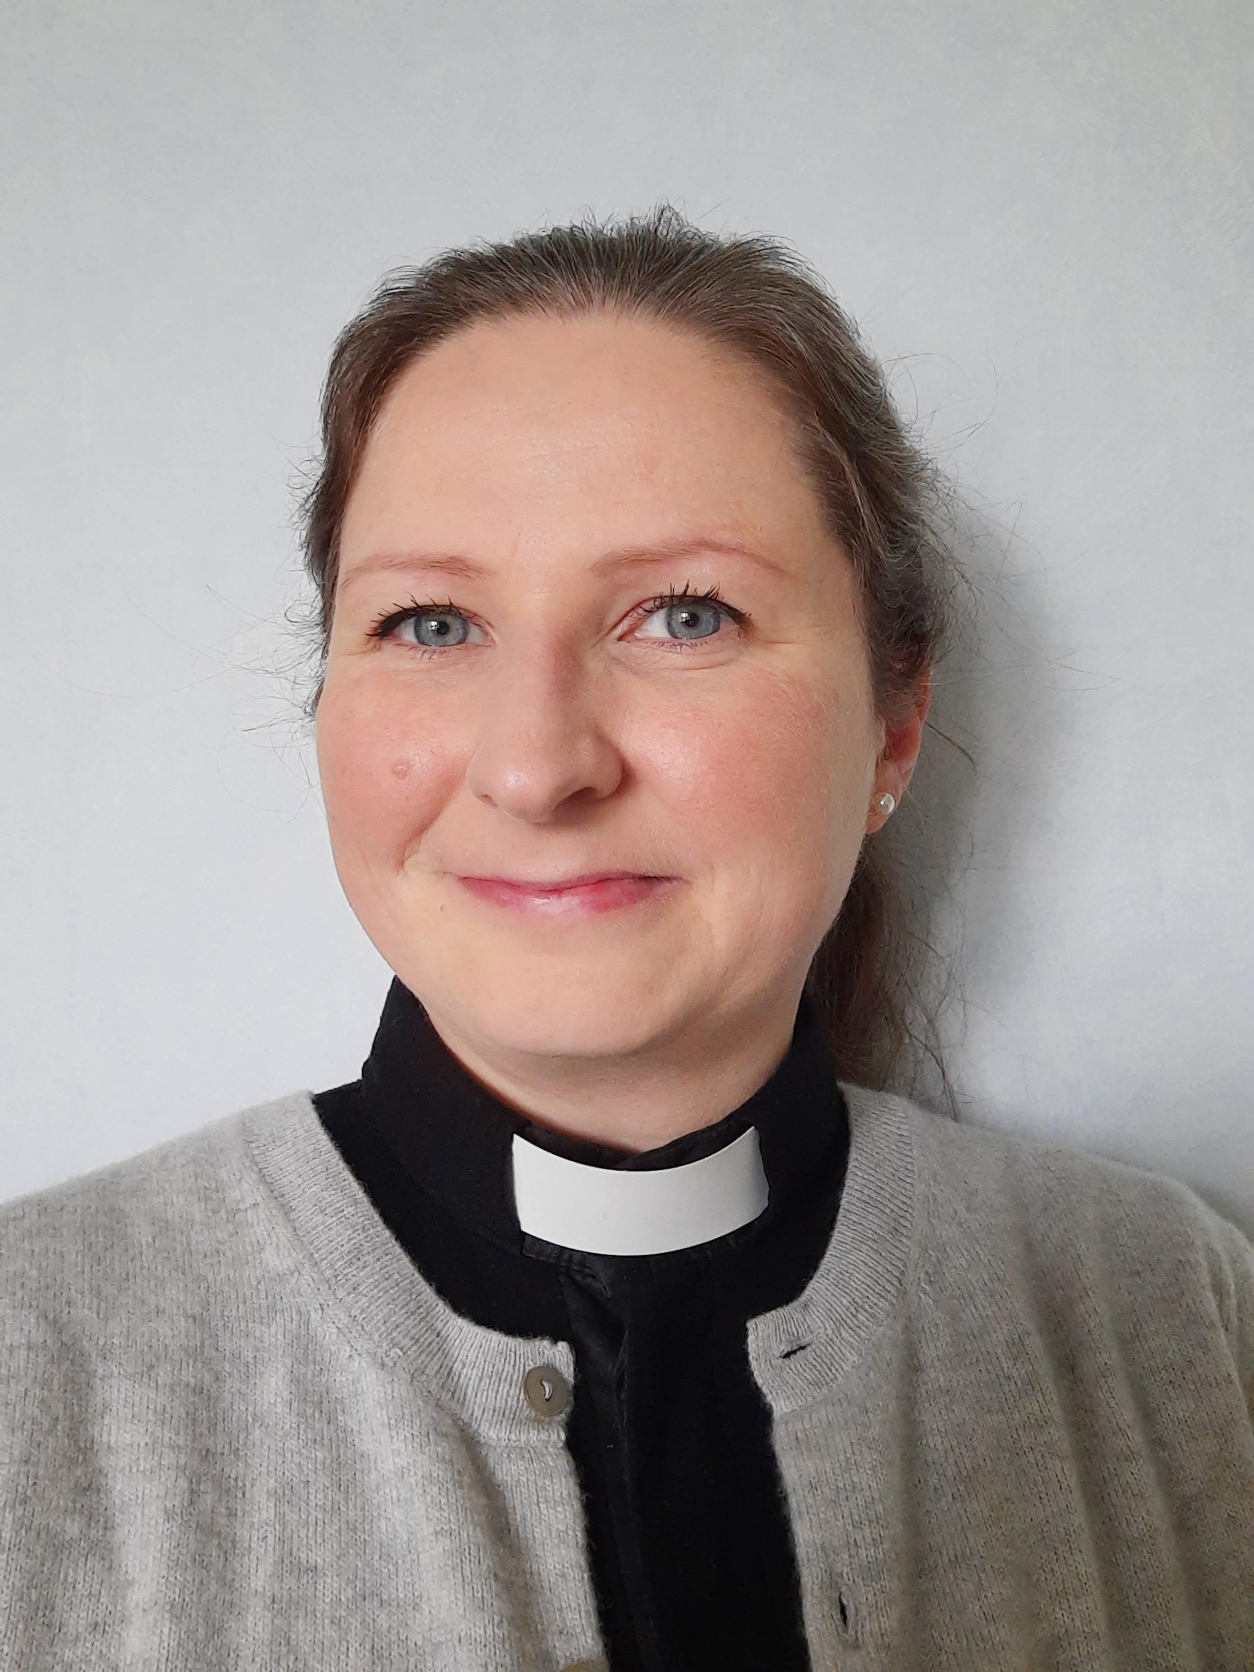 Seurakuntapastori Emmi Korpi aloitti työt Kangasalan seurakunnassa kesällä. Hän odottaa erityisesti ihmiste...